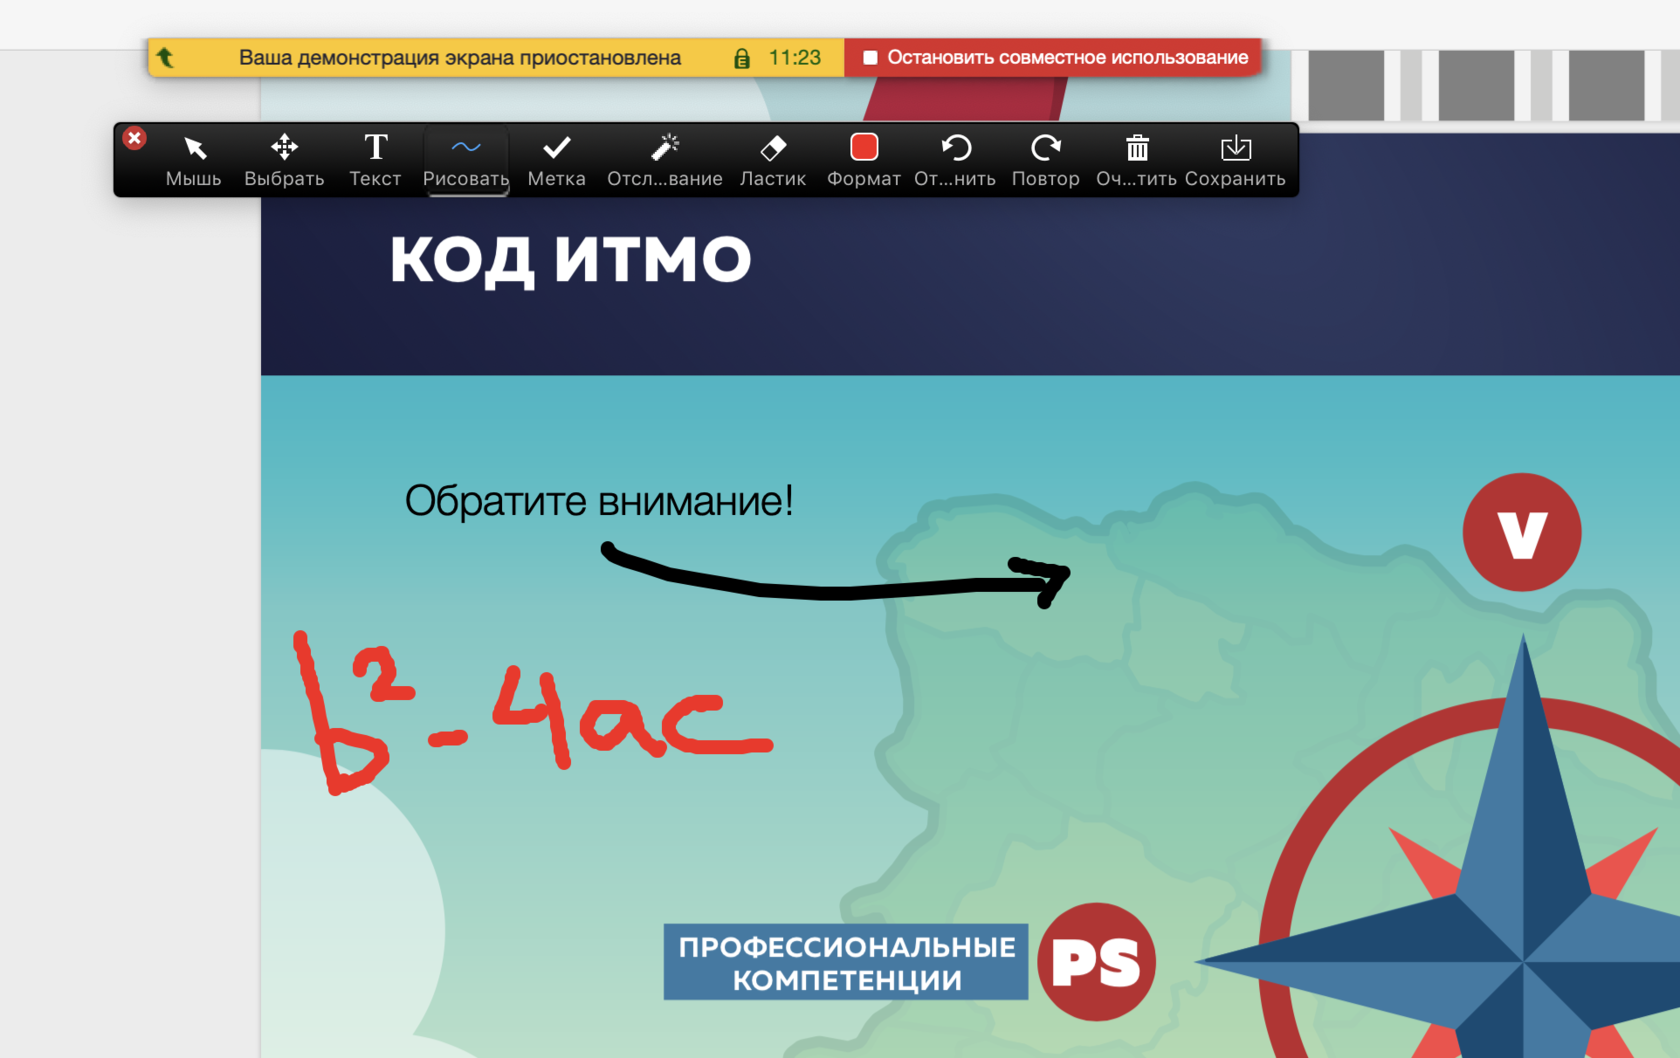 Программа для демонстрации экрана. Аудитория демонстрация на экране. Демонстрация экрана победа Новосибирск.